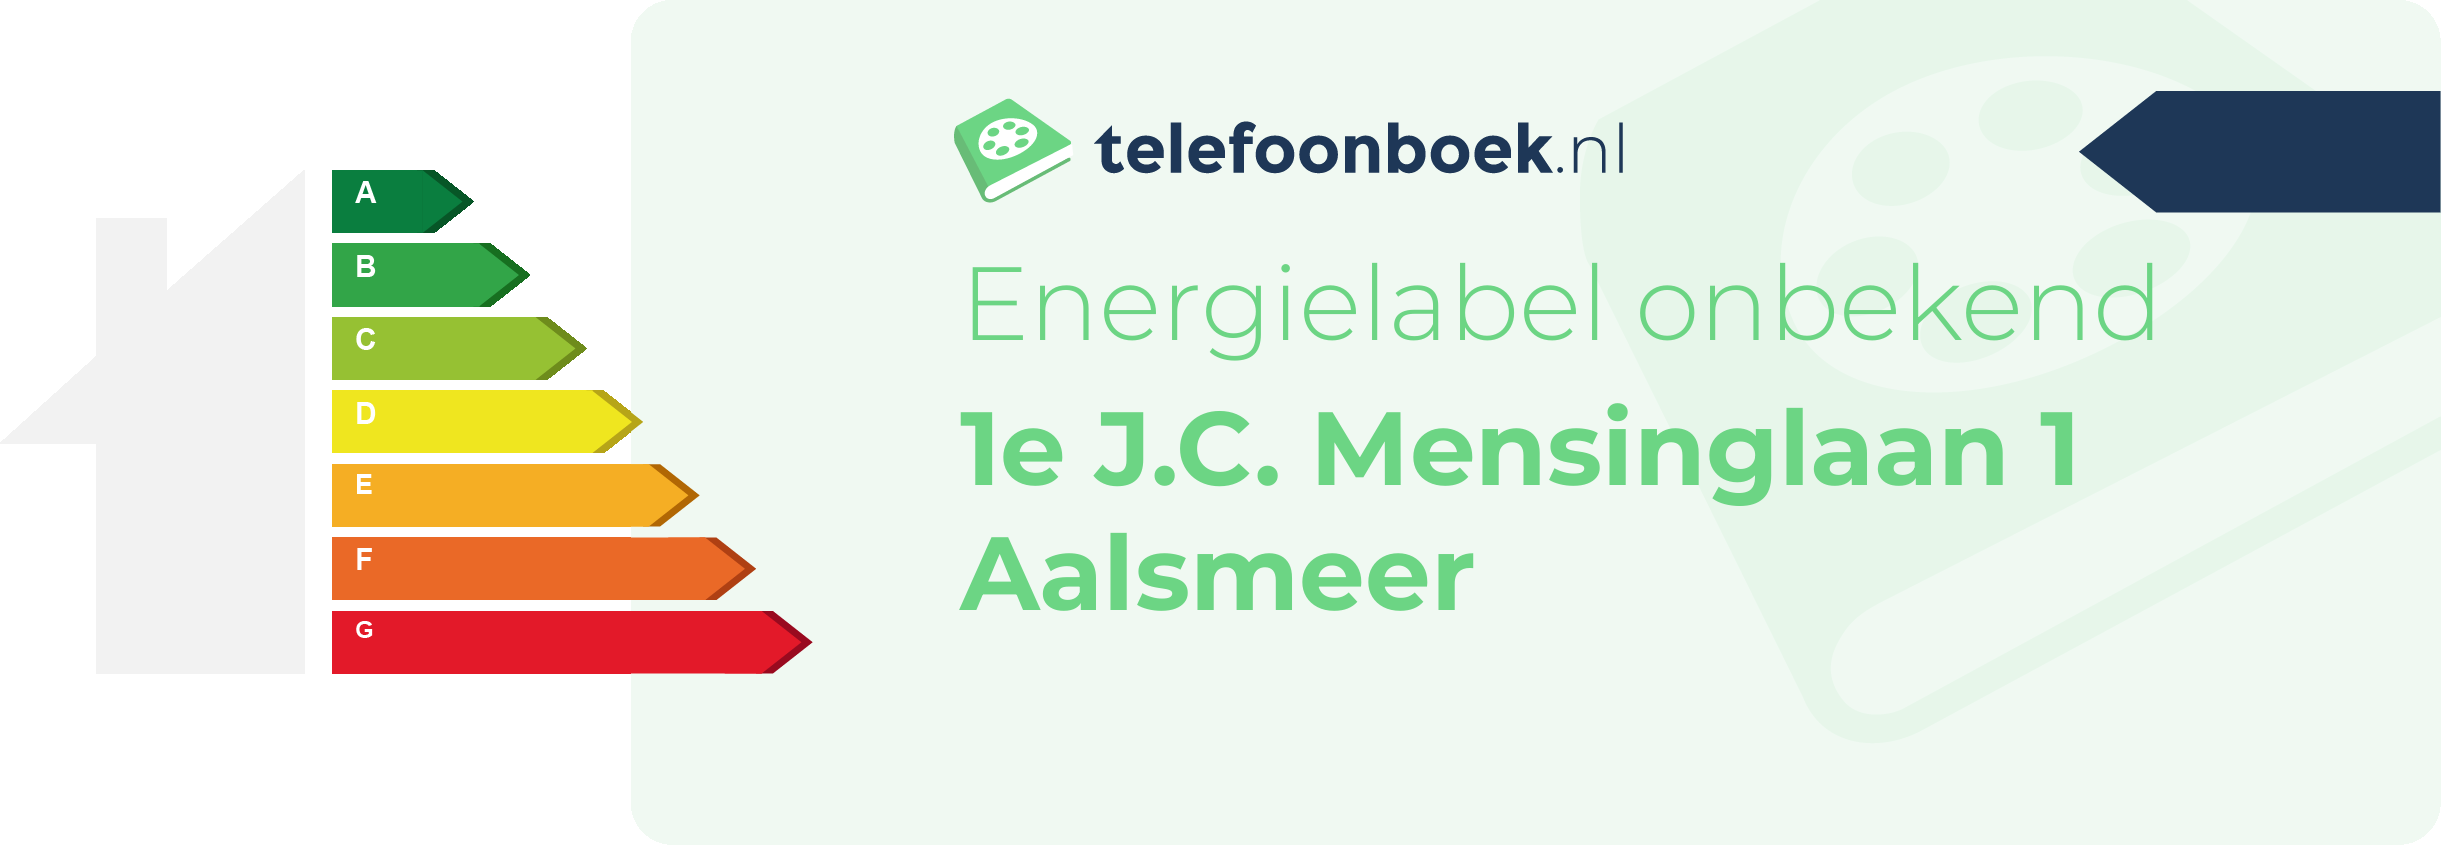 Energielabel 1e J.C. Mensinglaan 1 Aalsmeer